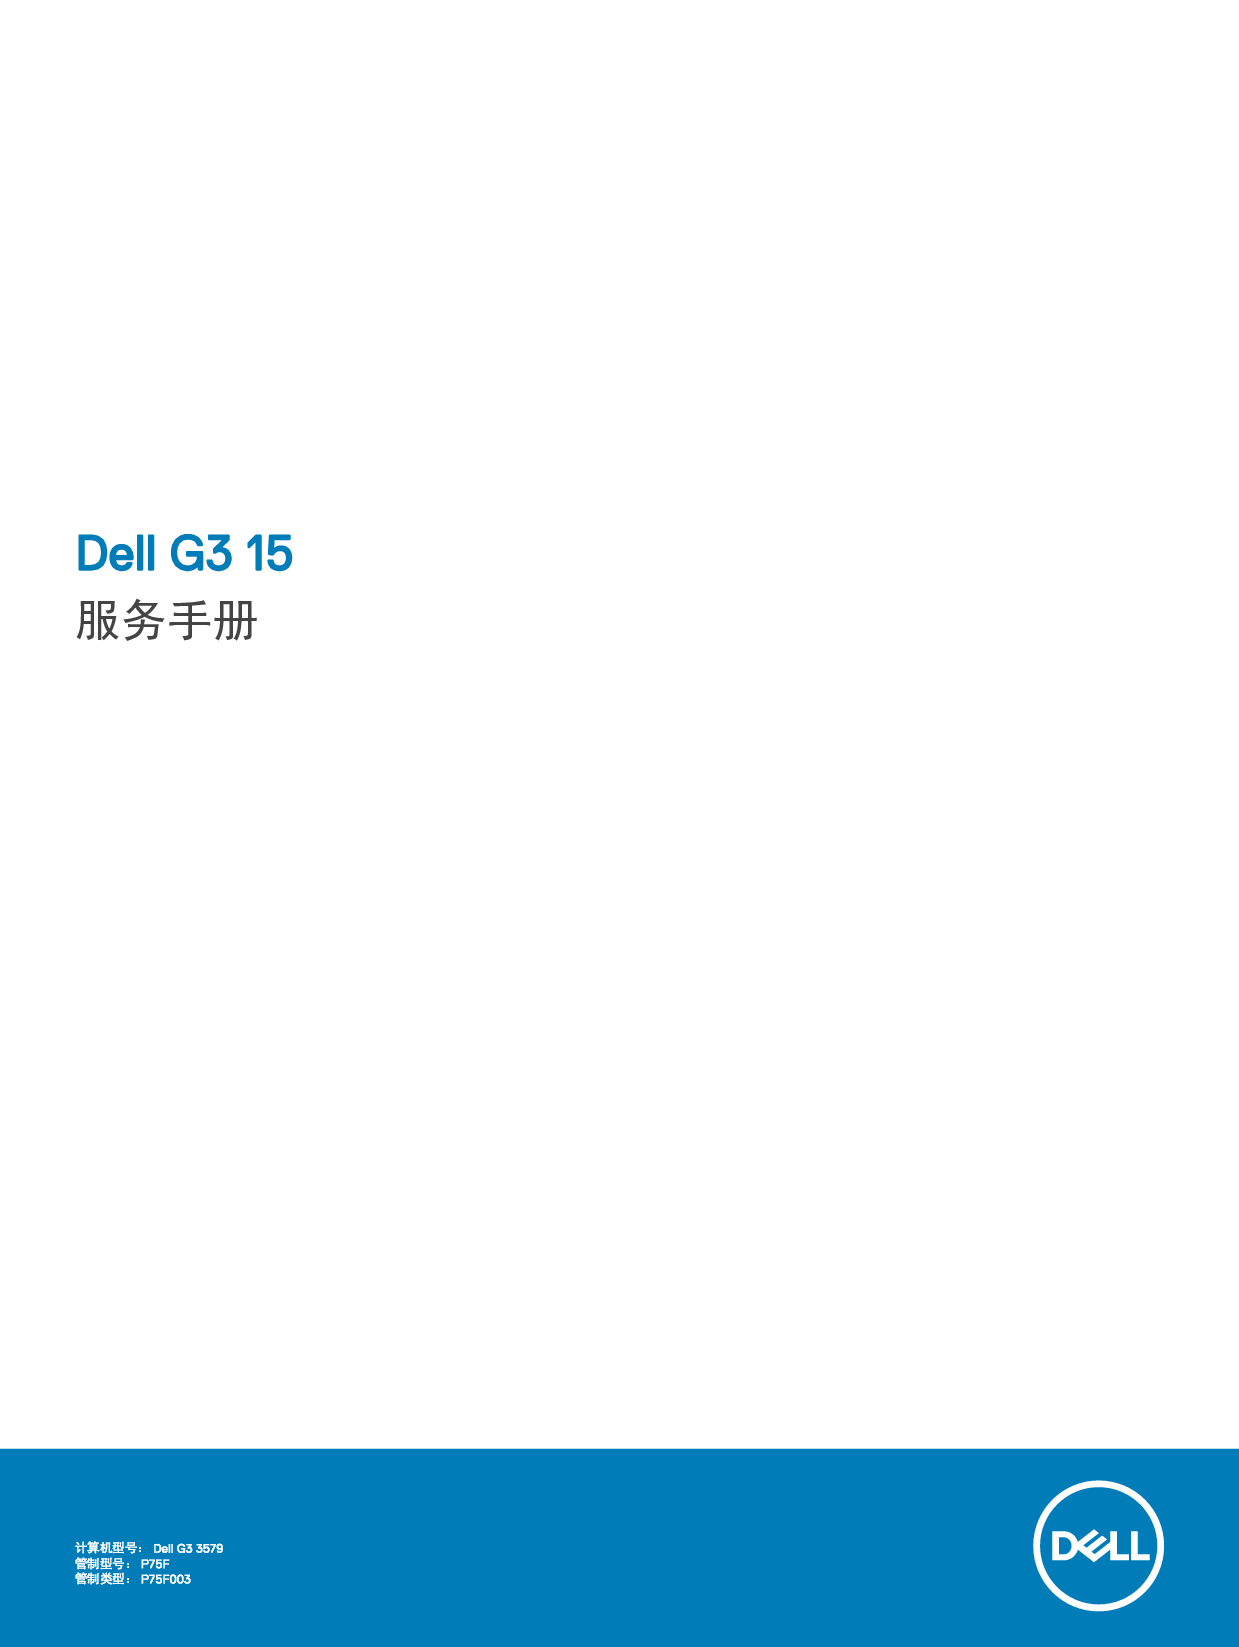 戴尔 Dell G3 3579 维修服务手册 封面